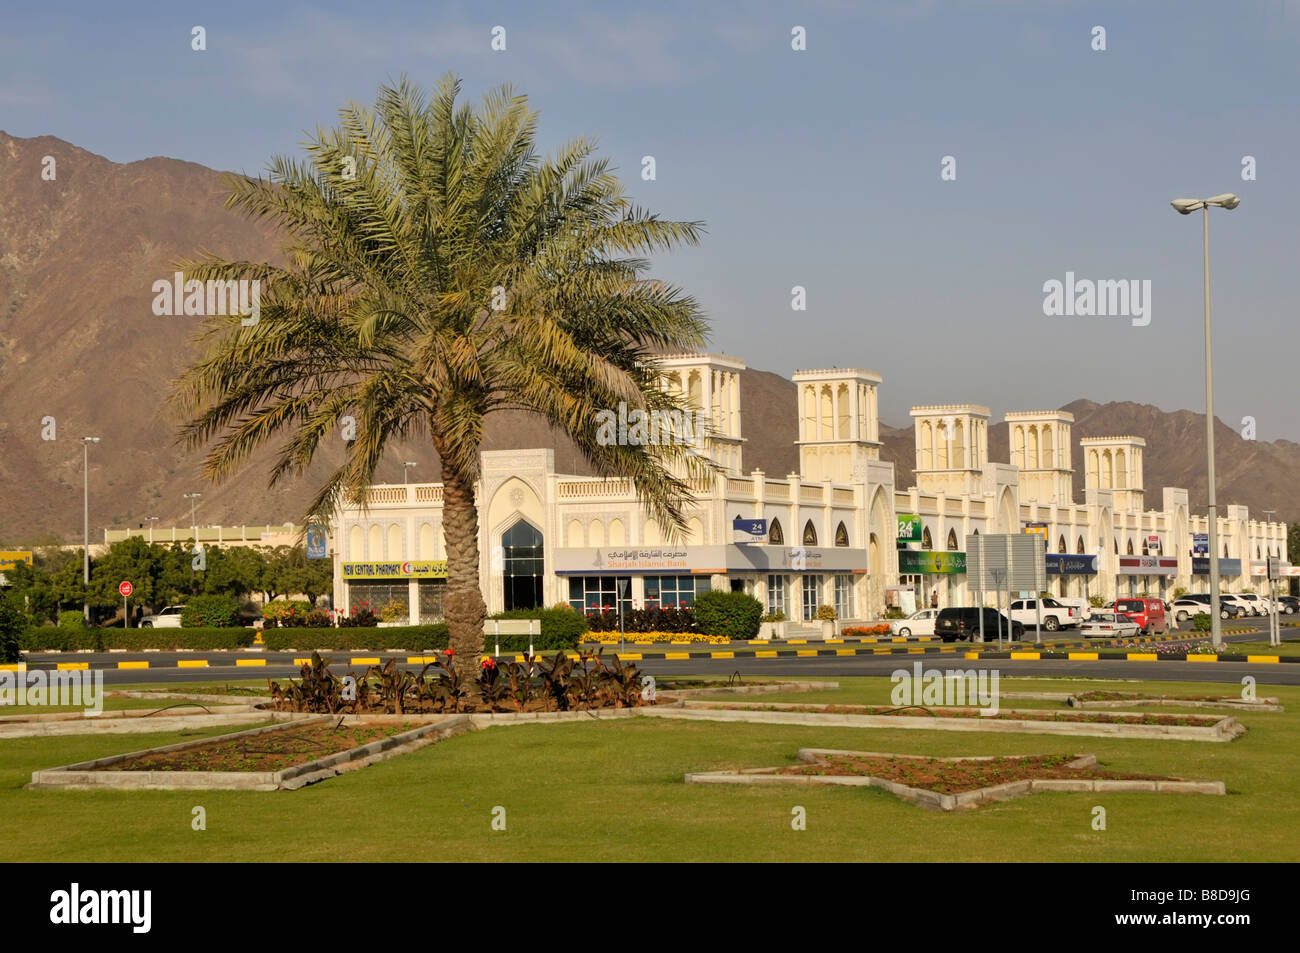 Emirato di Sharjah sul Golfo di Oman uno degli Emirati arabi uniti, Palm tree e la fila delle moderne unità negozio comprese le banche Foto Stock